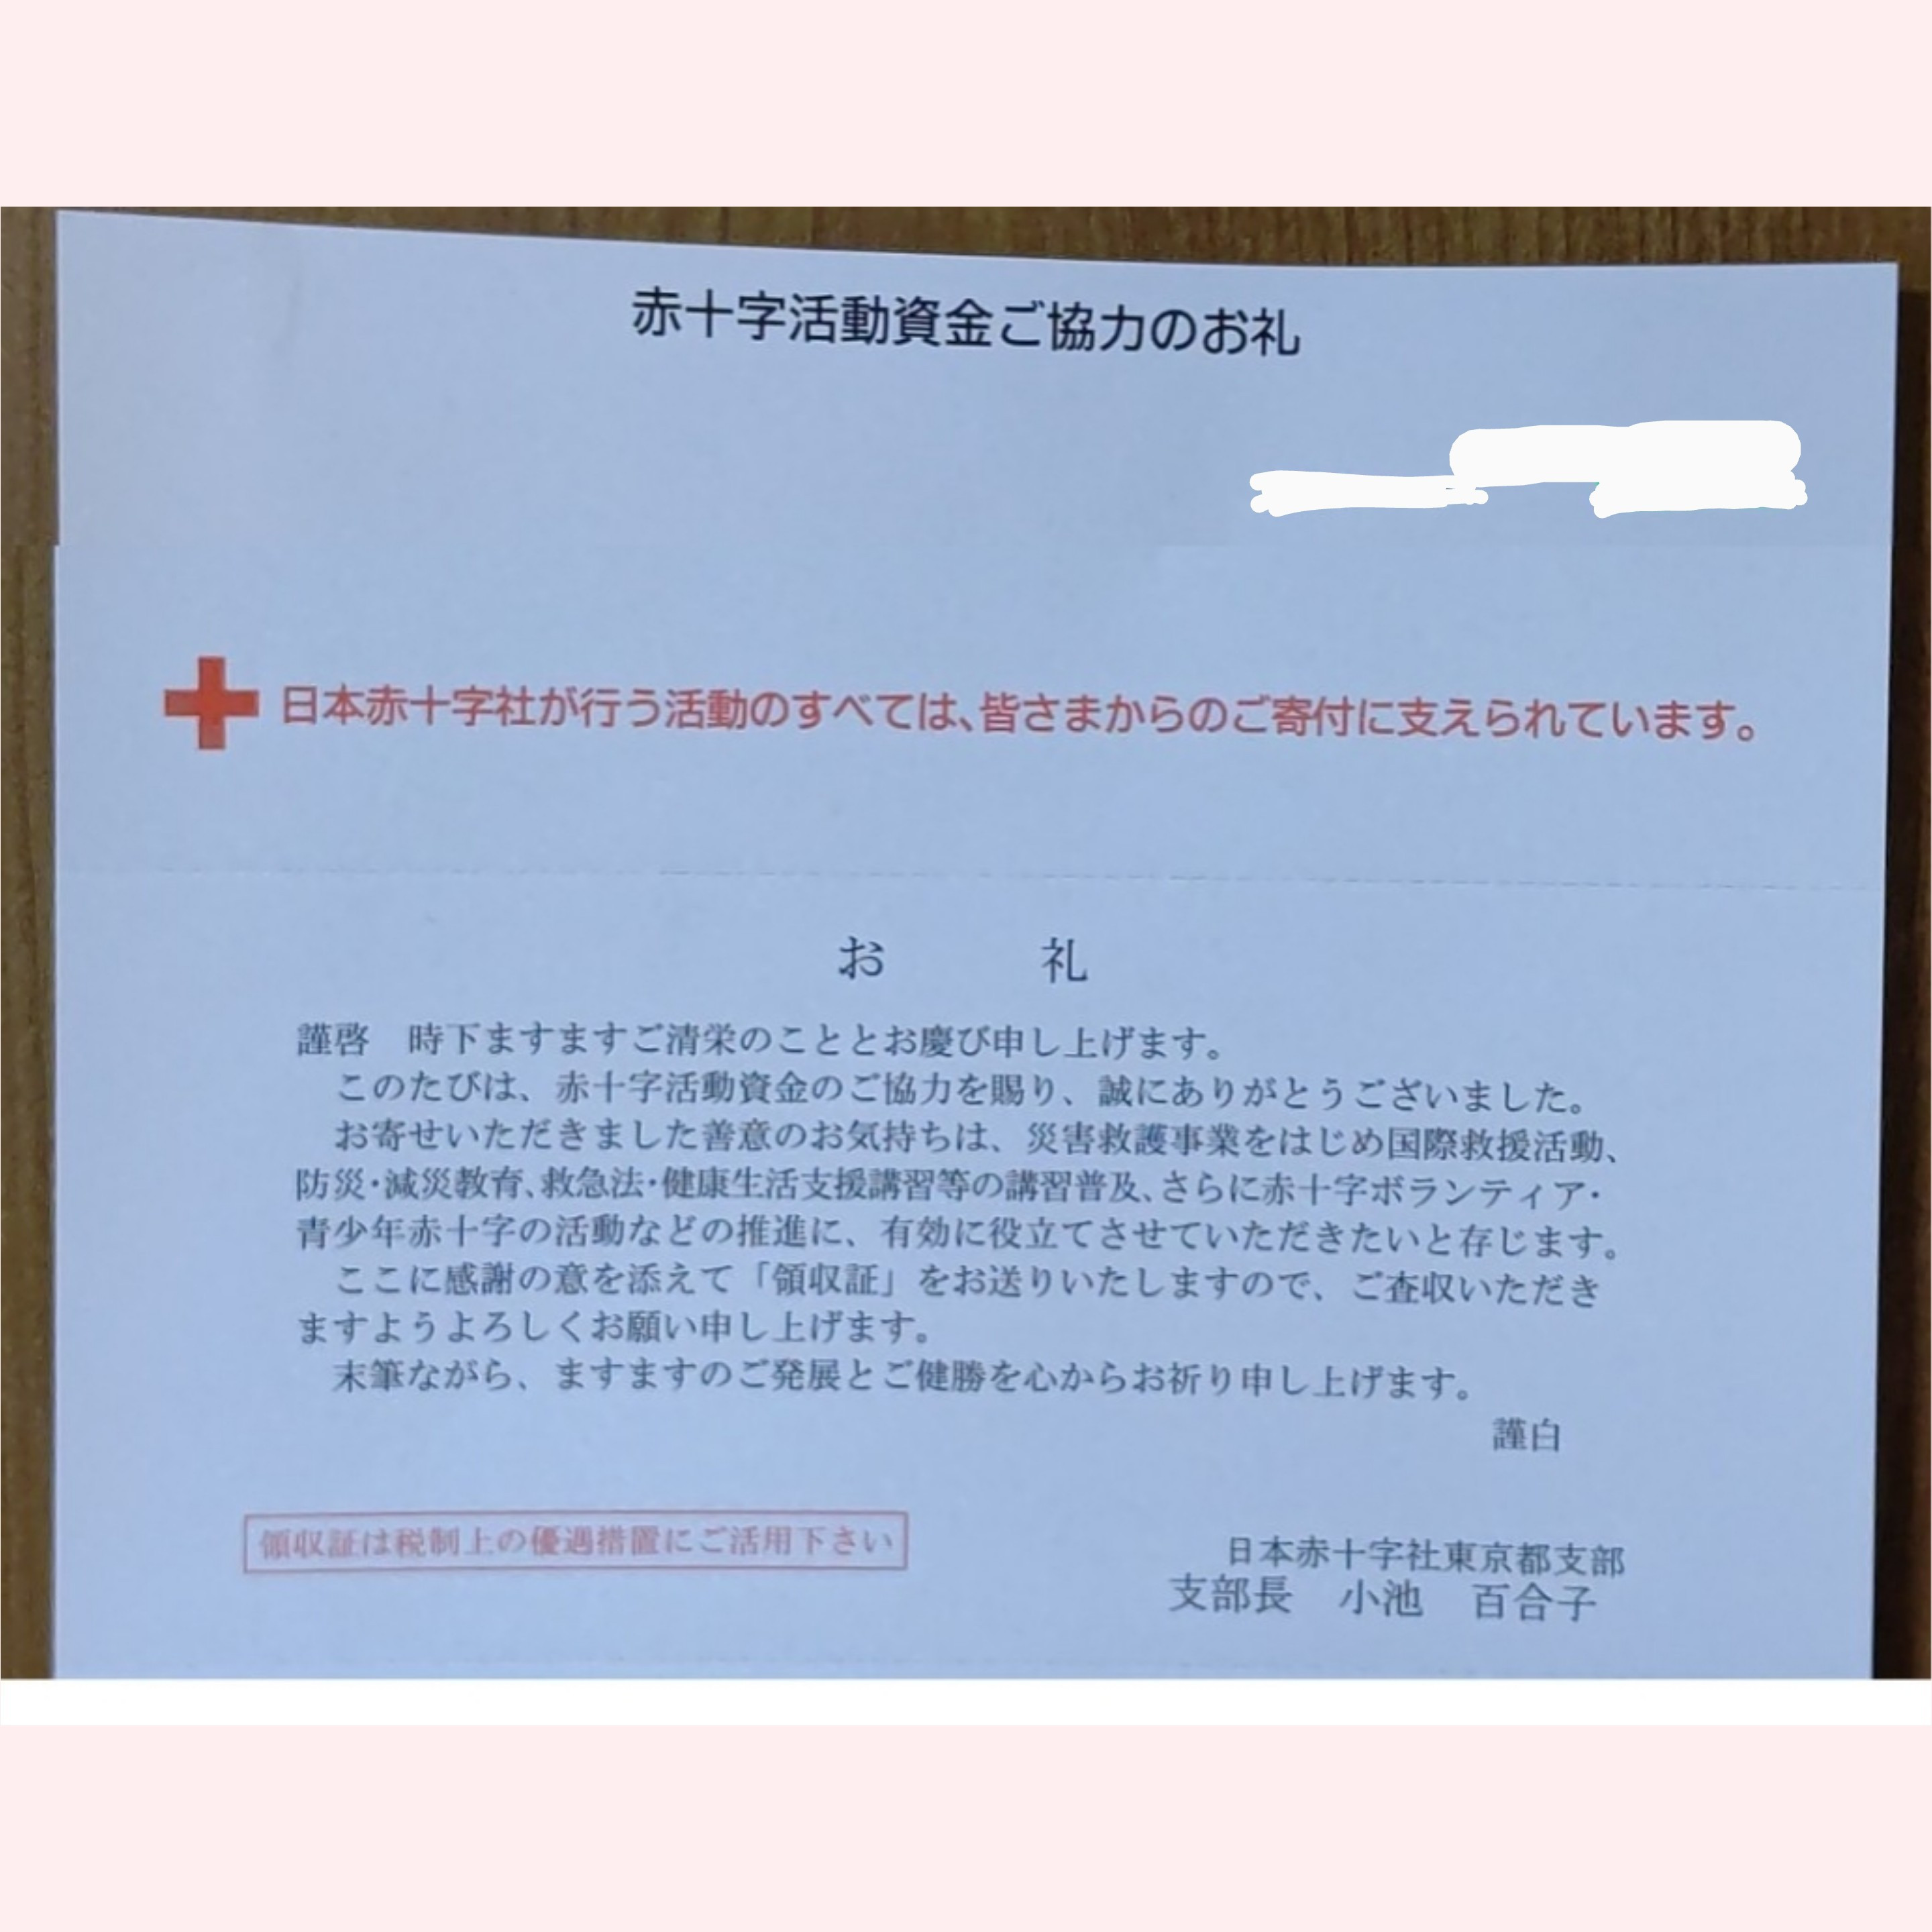 [2019年]赤十字活動資金ご協力のお礼をいただきました